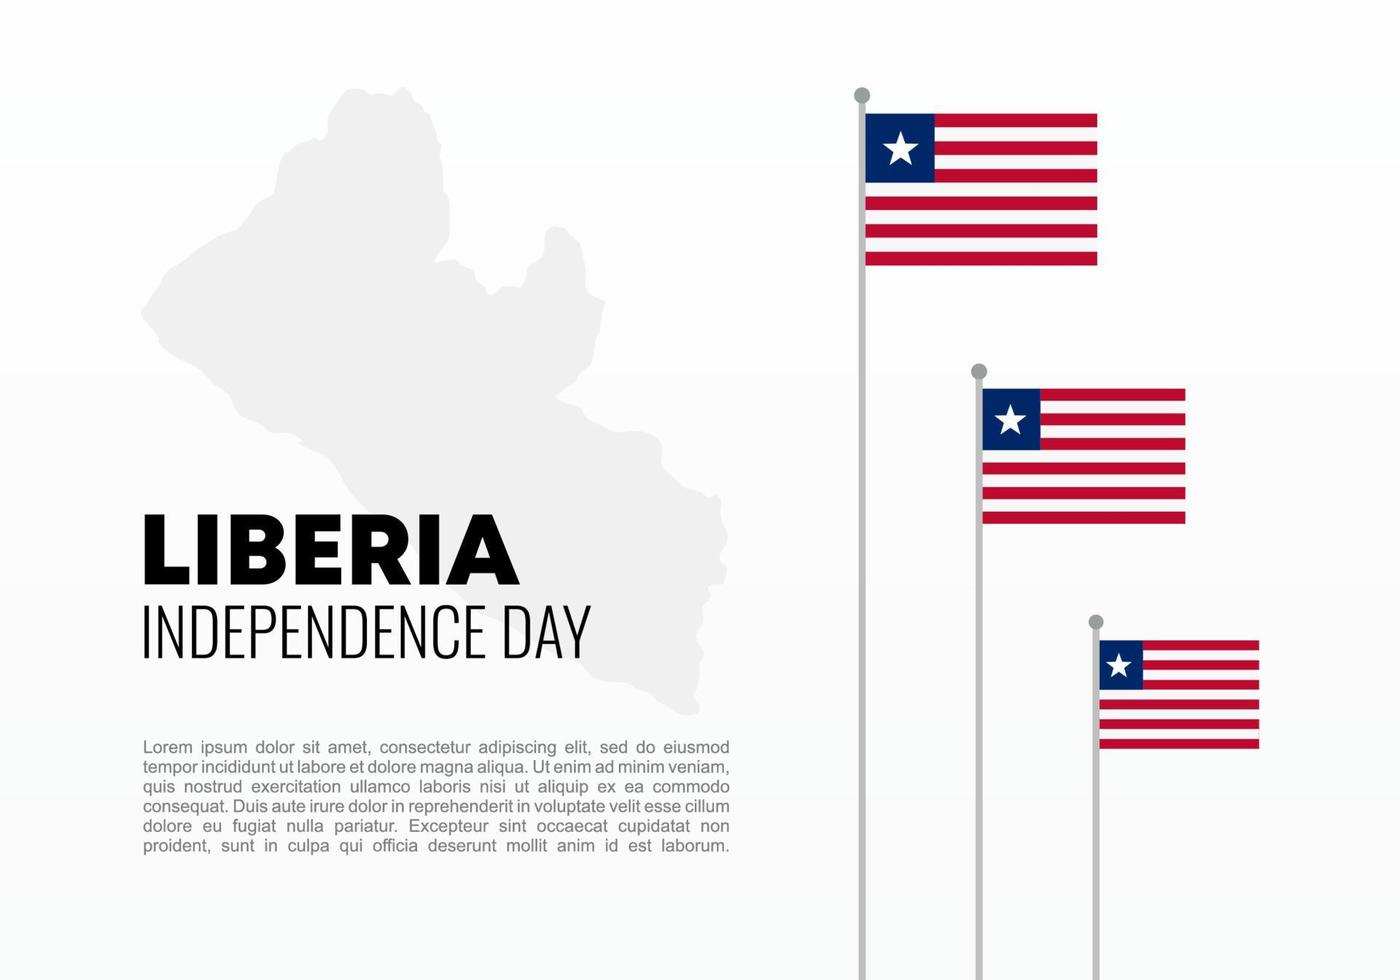 fête de l'indépendance du libéria pour la célébration nationale le 26 juillet. vecteur